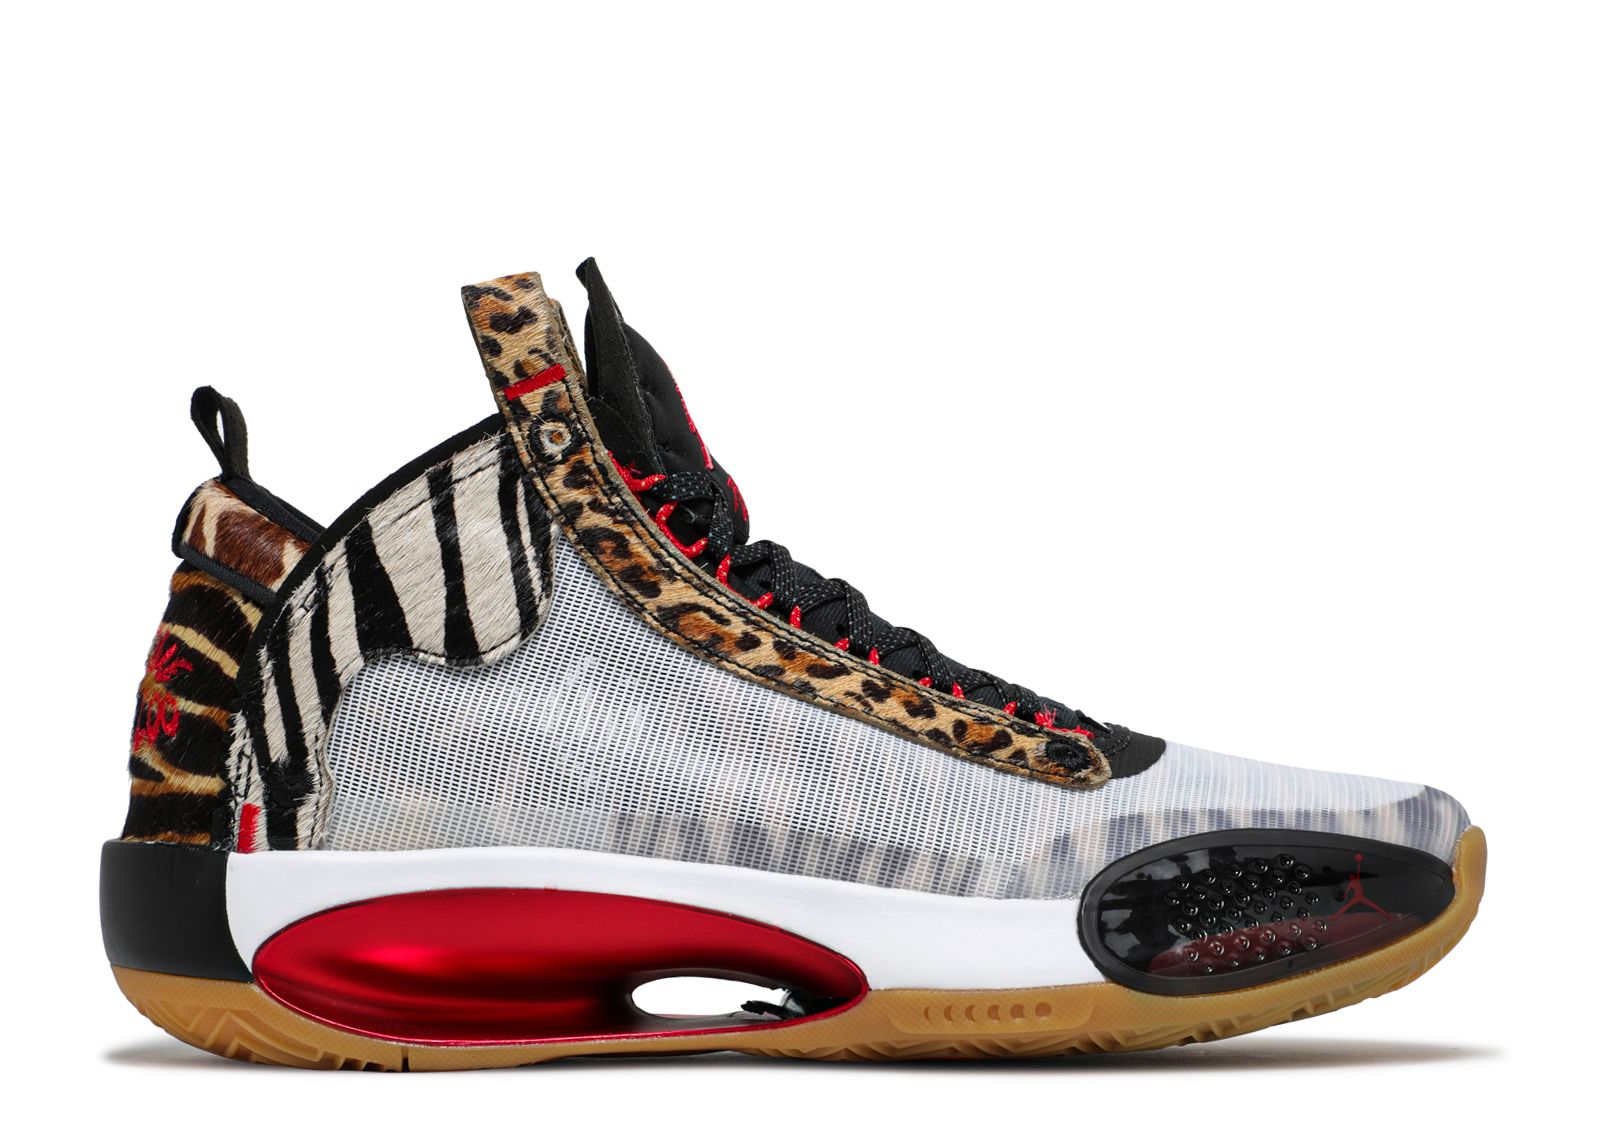 A closer look at Jayson Tatum's latest Jordan sneakers